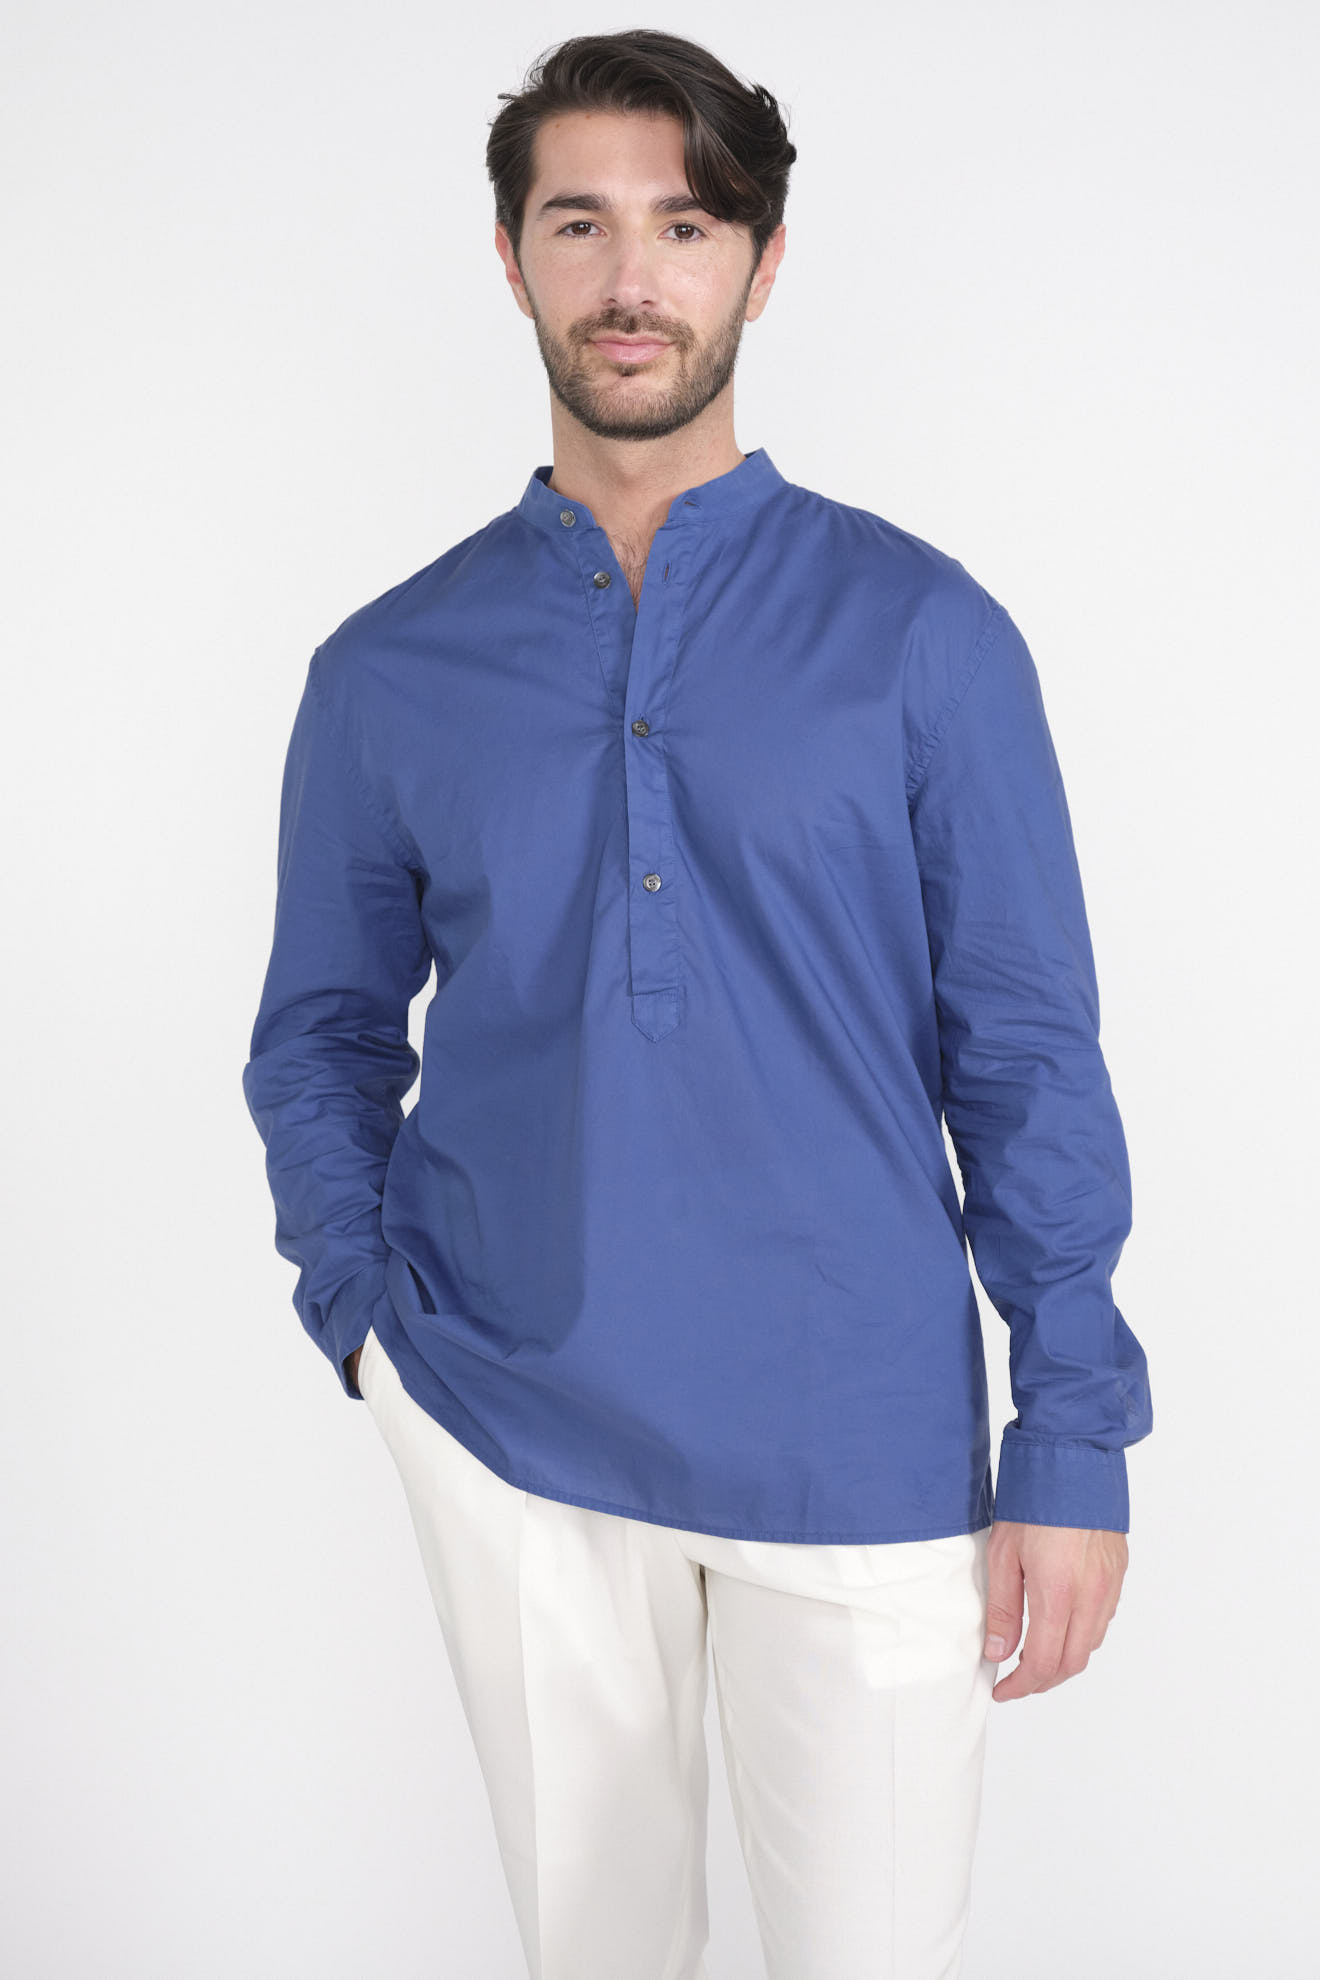 Cotton long sleeve button front shirt blue L